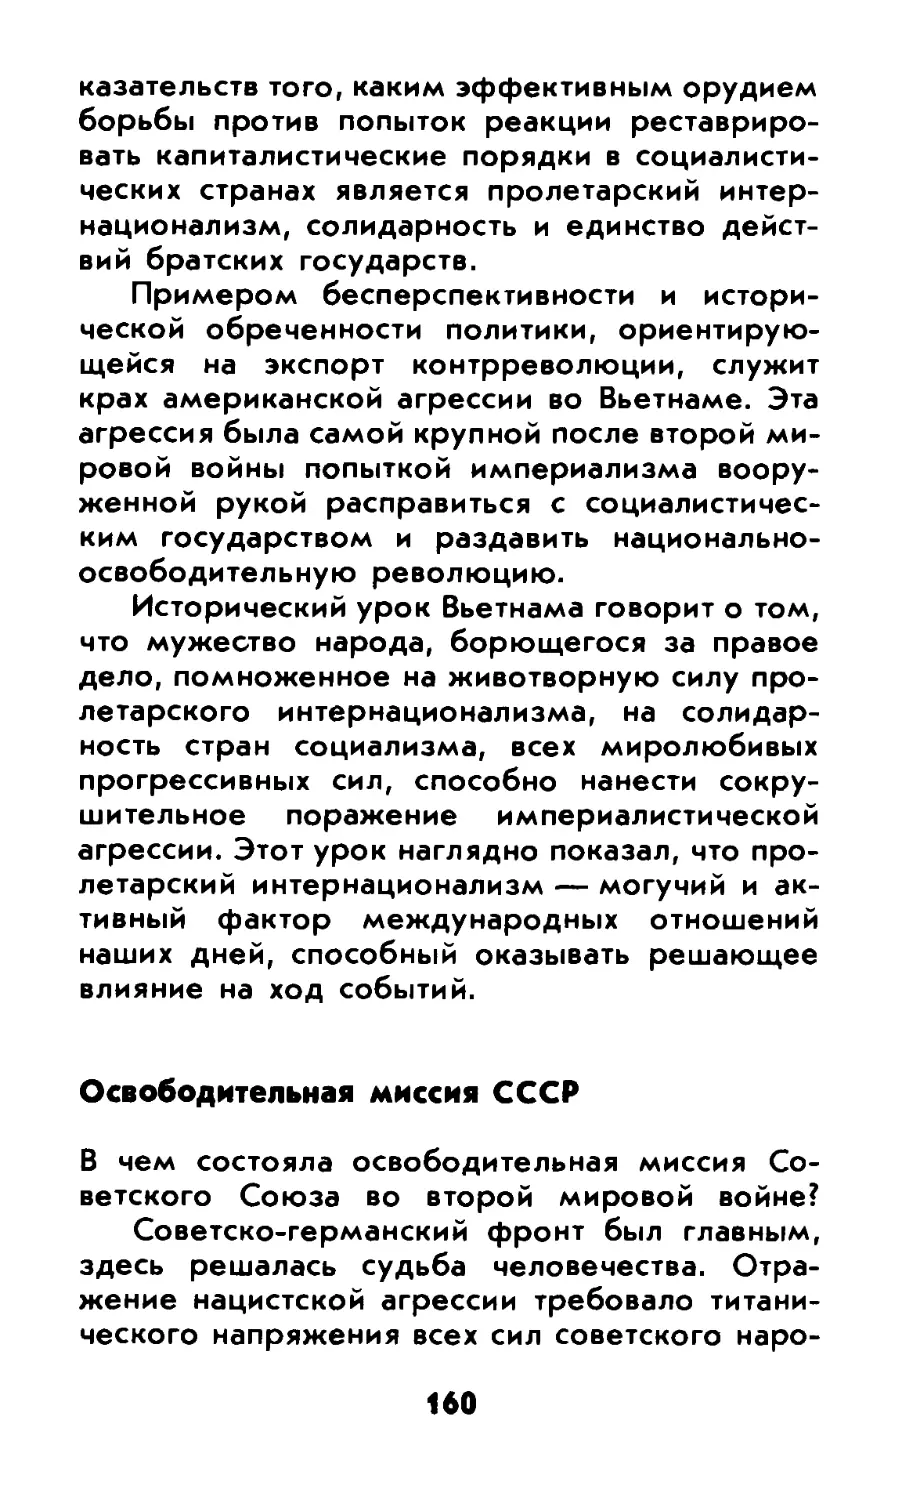 Освободительная миссия СССР